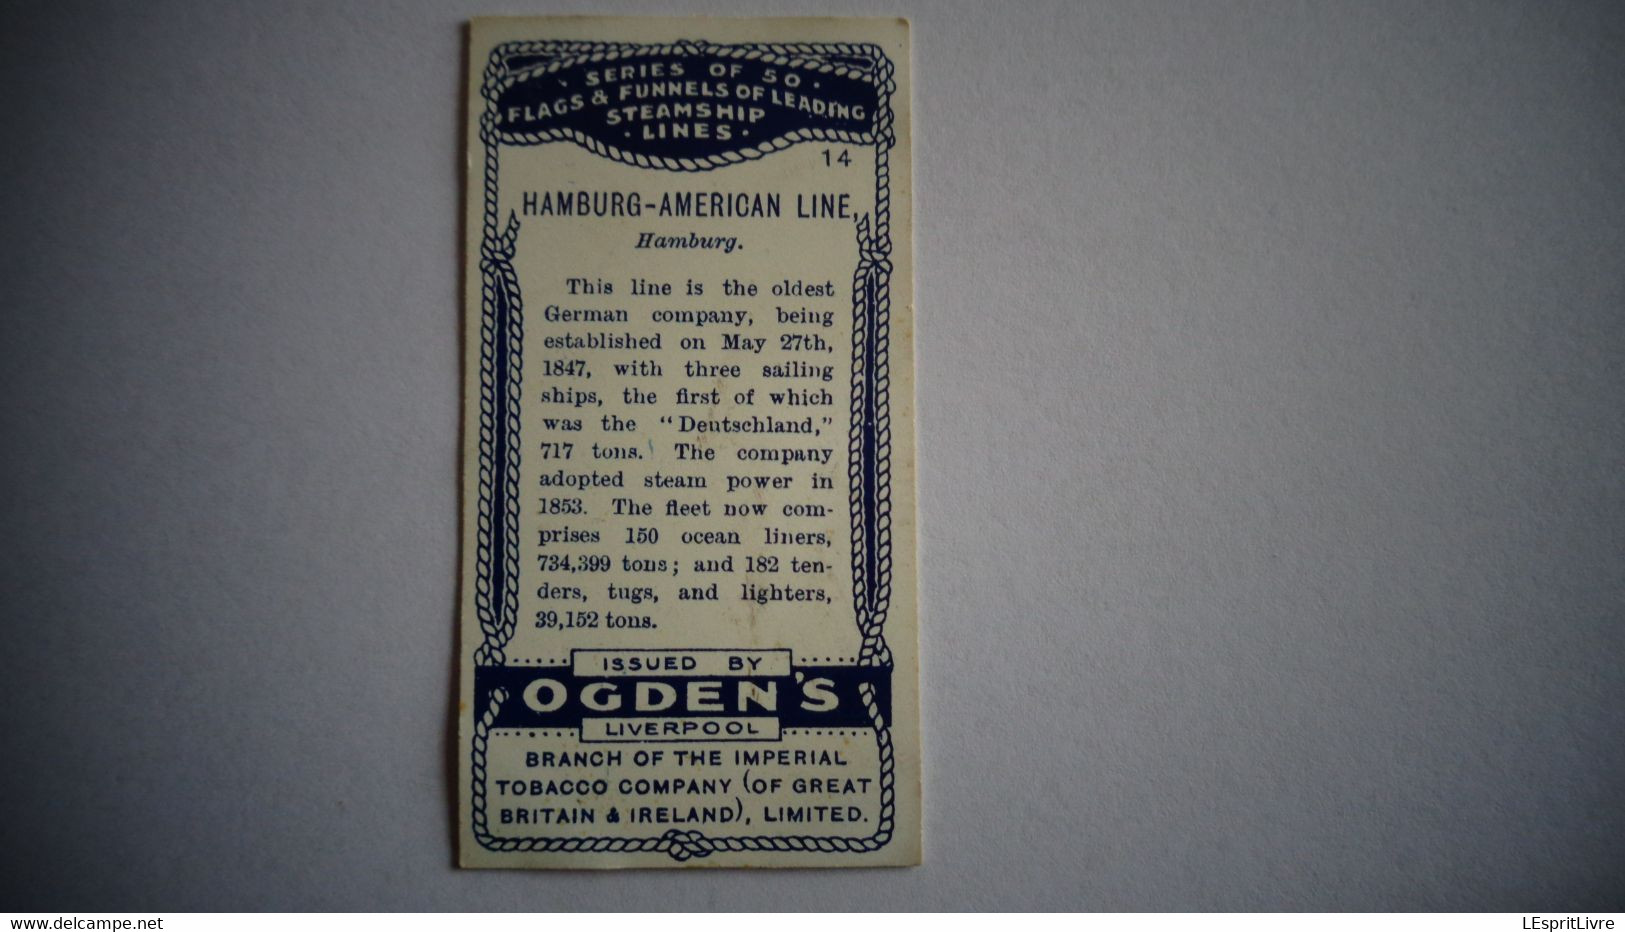 FLAGS AND FUNNELS Steamship Lines 14 HAMBURG AMERICAN LINE Marine Cigarette OGDEN'S Tobacco Vignette Trading Card Chromo - Ogden's